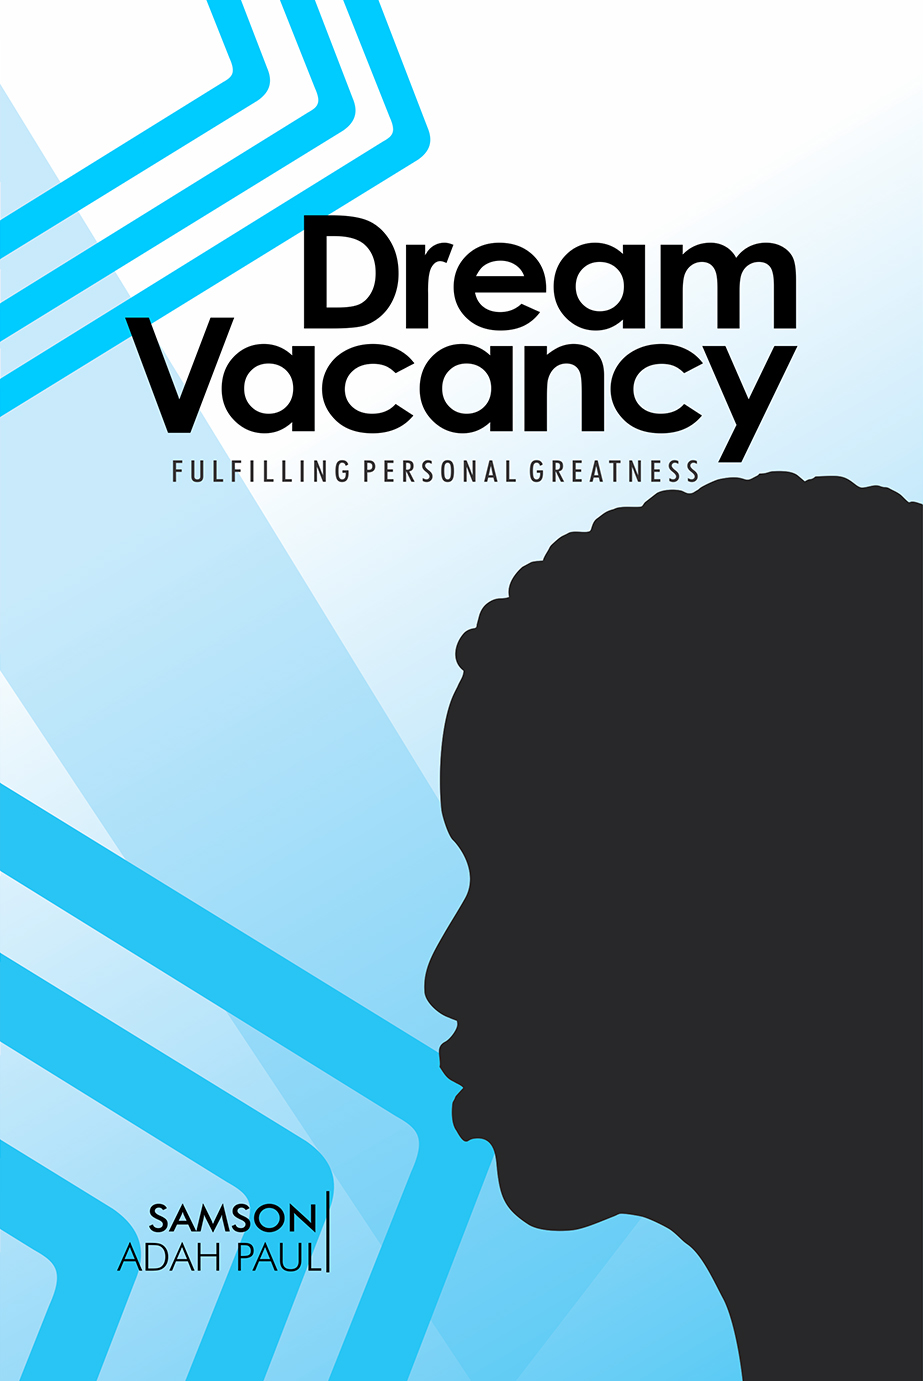 //samsonadahpaul.com/wp-content/uploads/2017/08/102-Dream-Vacancy-new.jpg